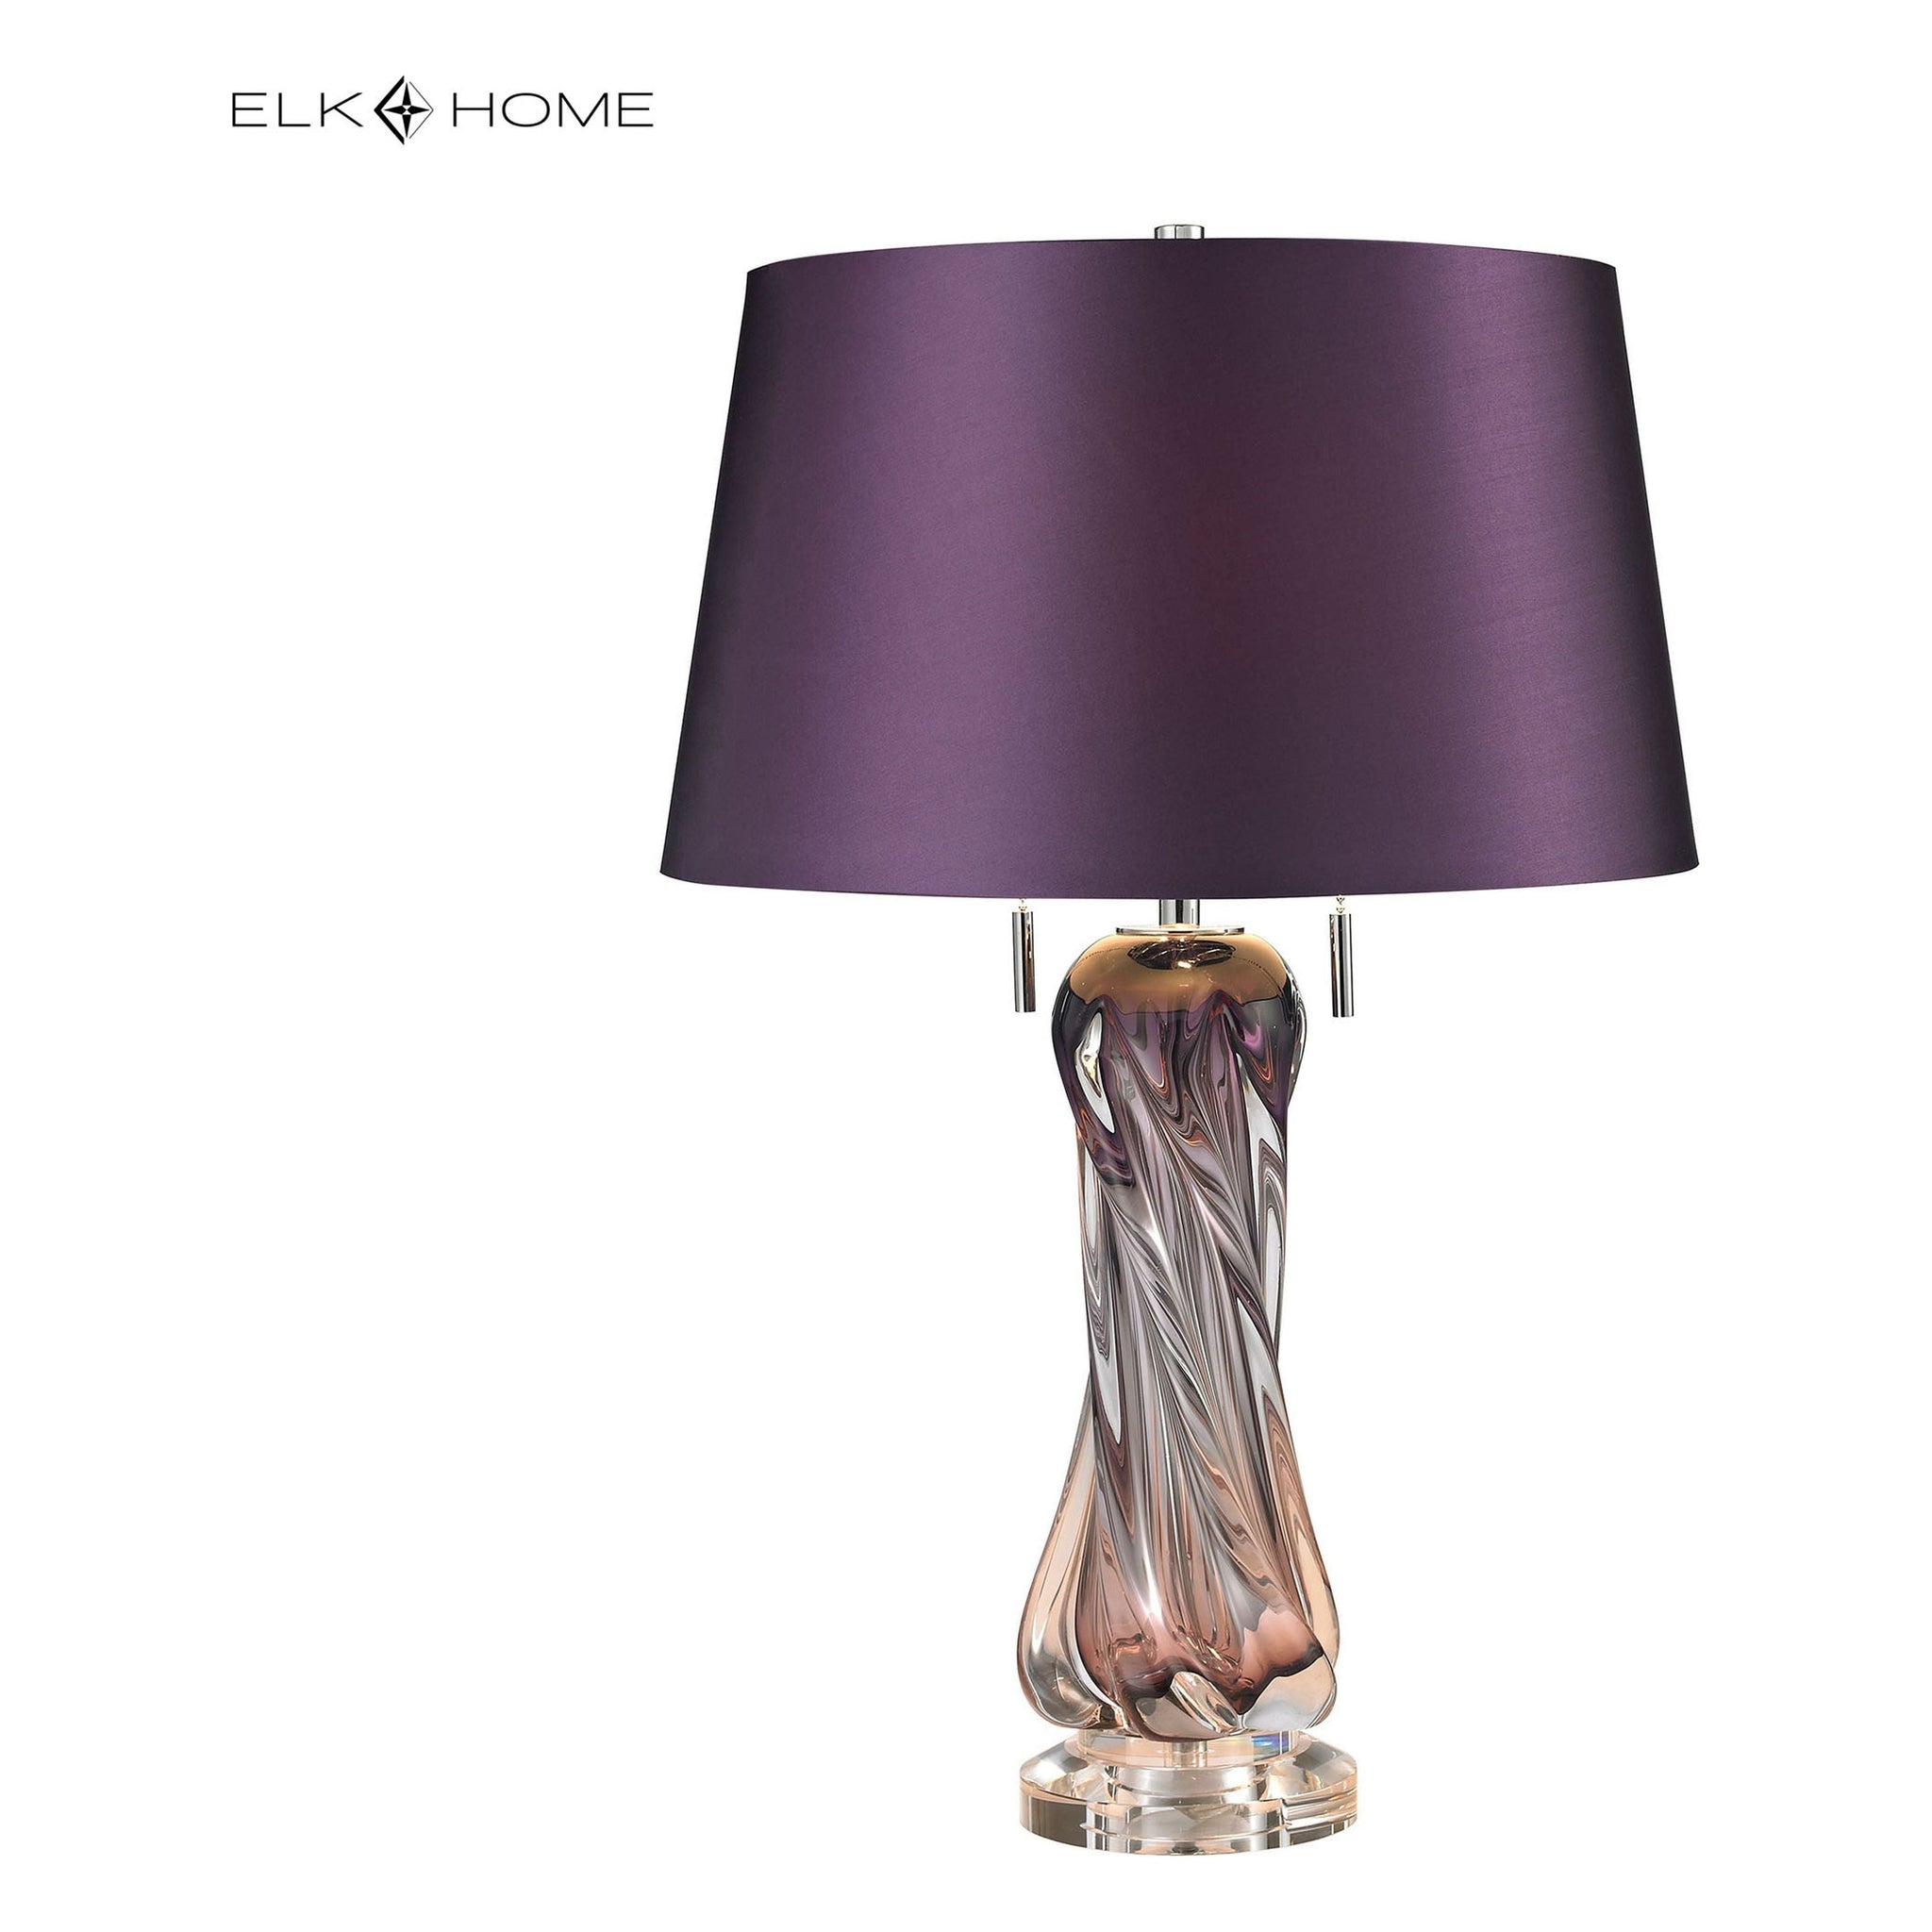 Vergato 24" High 2-Light Table Lamp